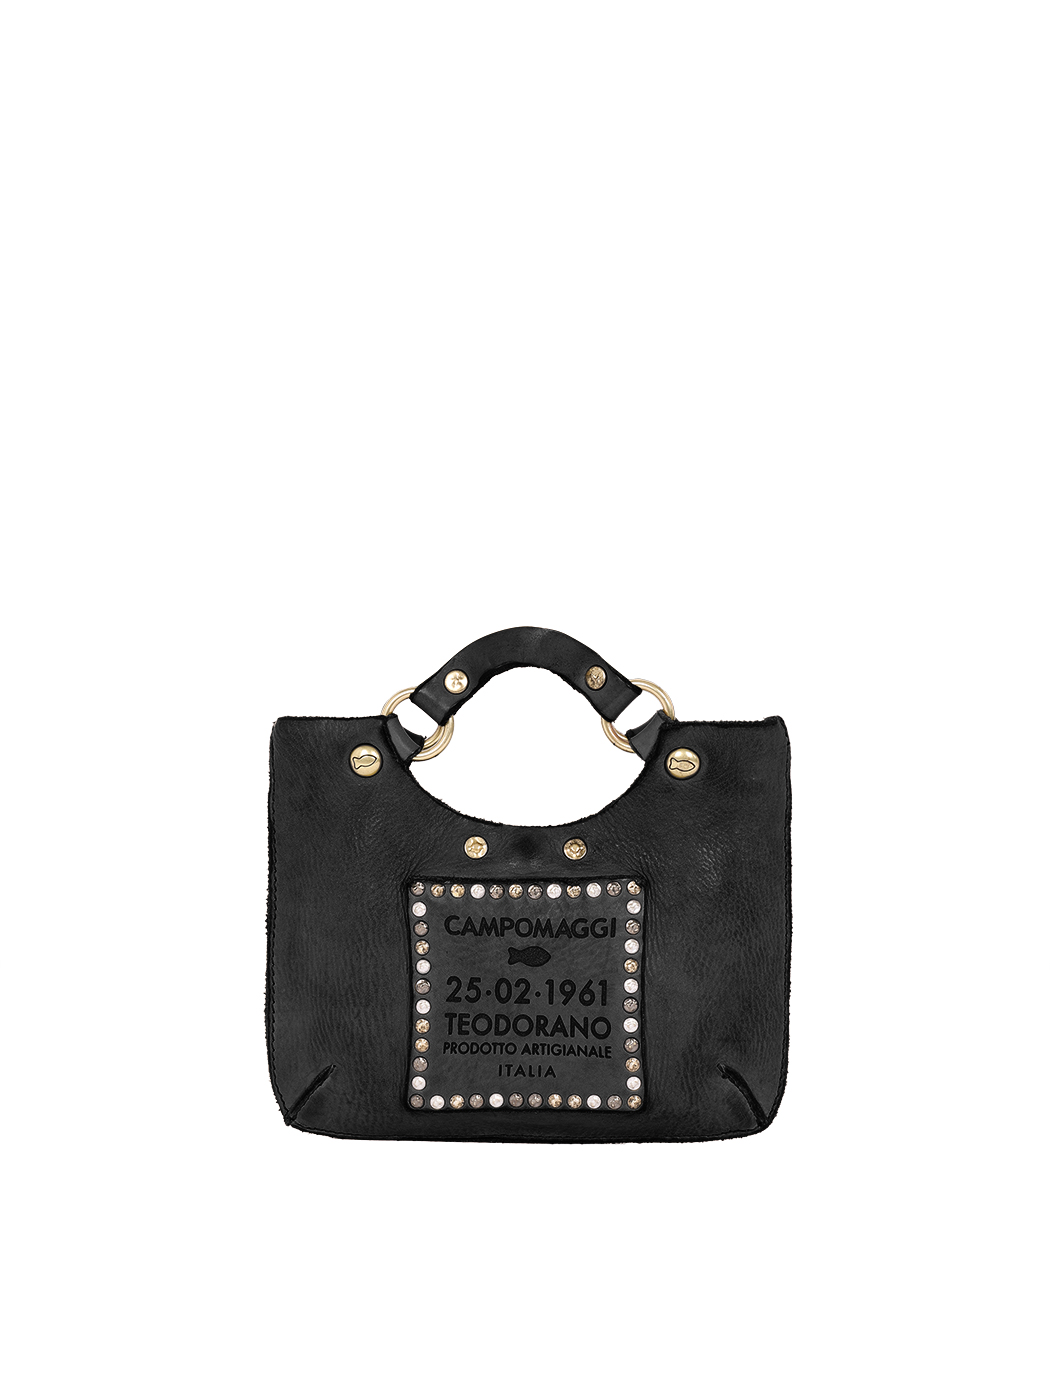 Мини - сумочка со съемным плечевым ремнем черного цвета